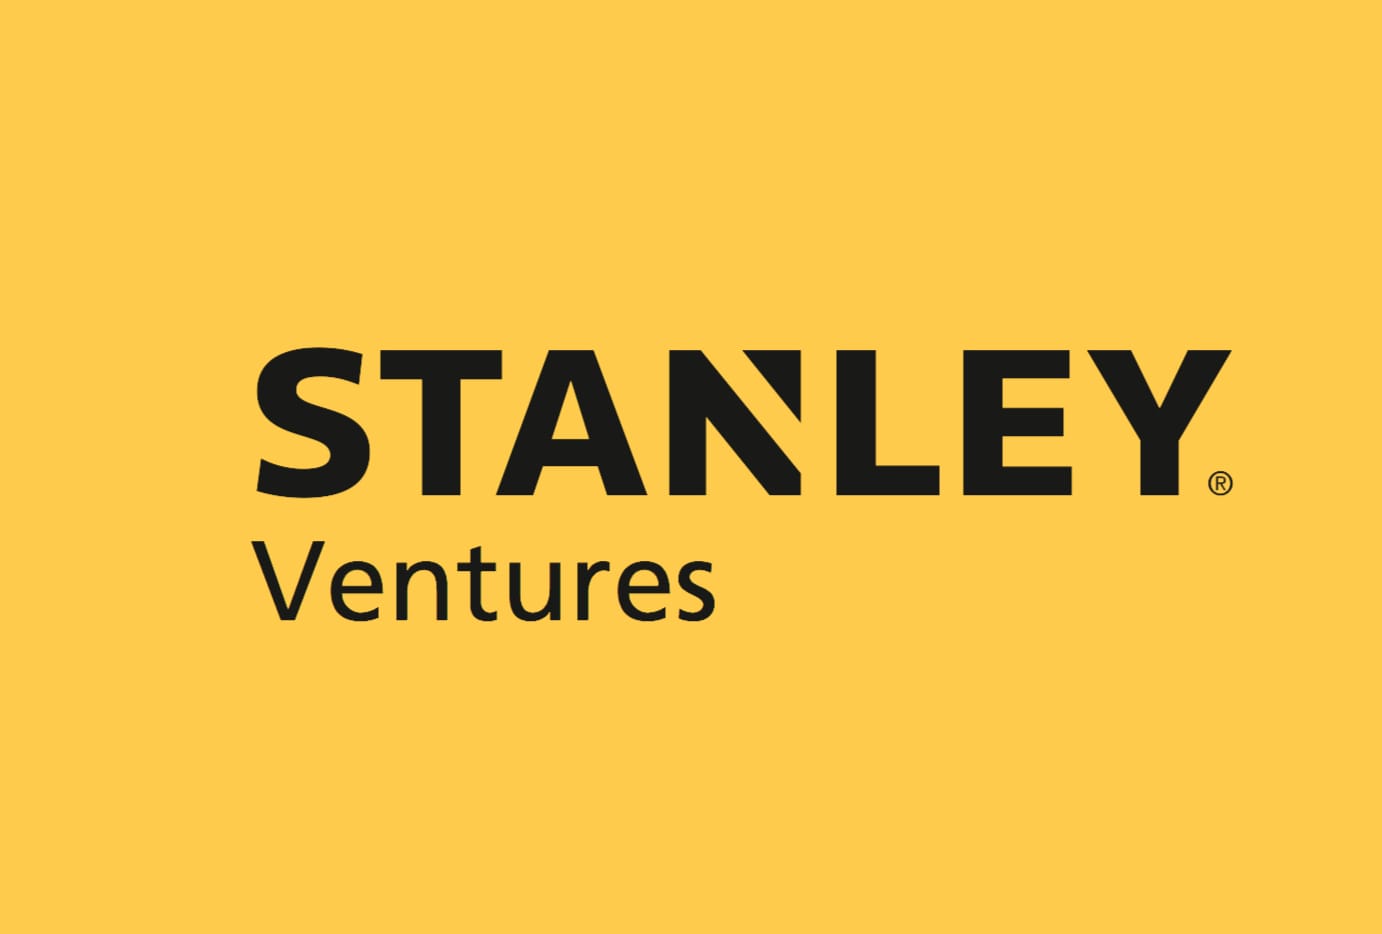  Stanley Ventures 